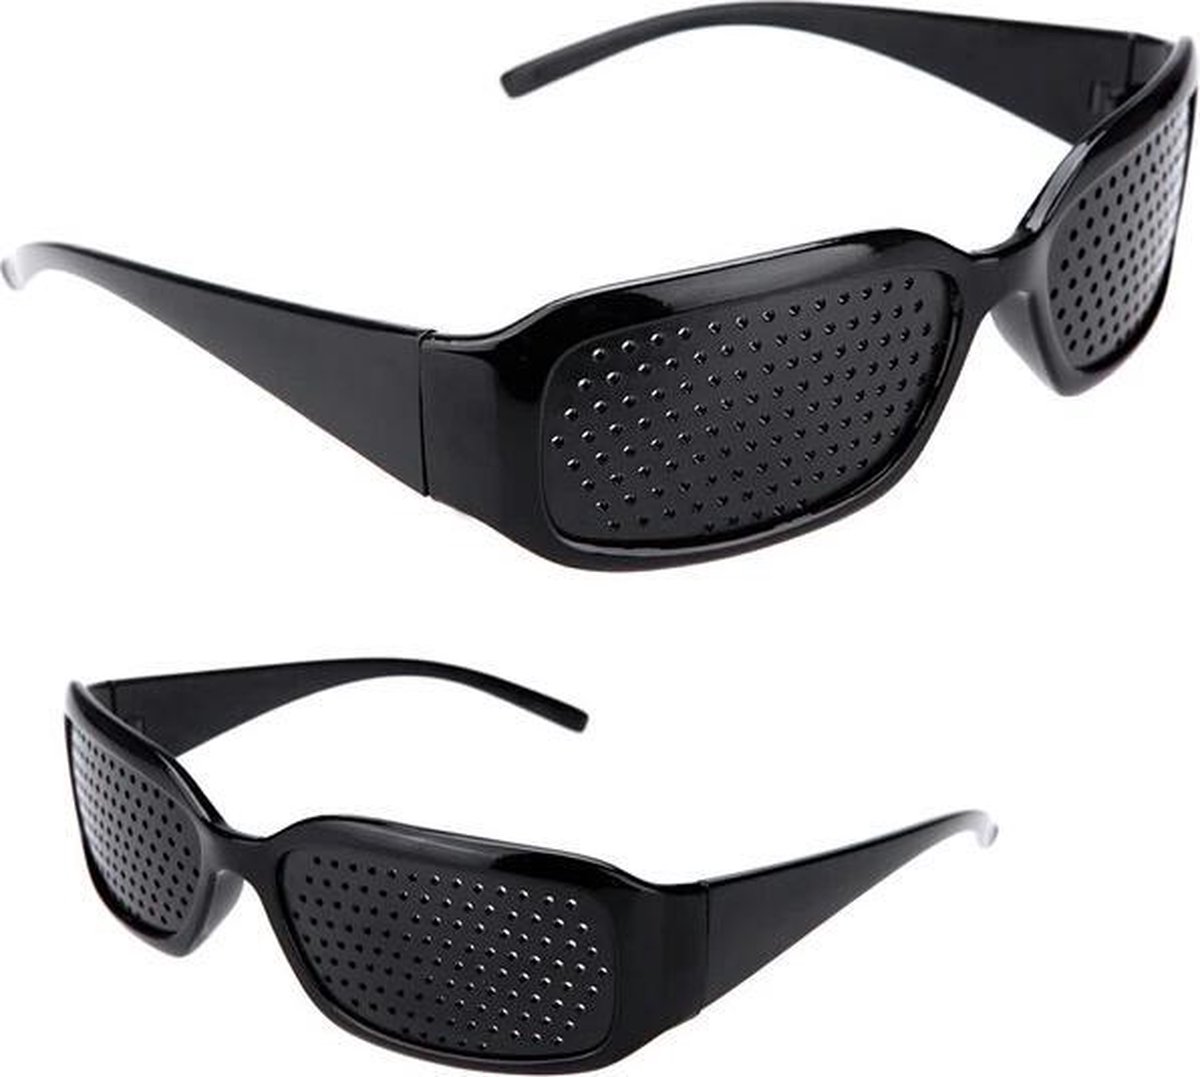 Rasterbril | gaatjesbril voor Oogtraining en gezichtsvermogen verbetering (Zwart)